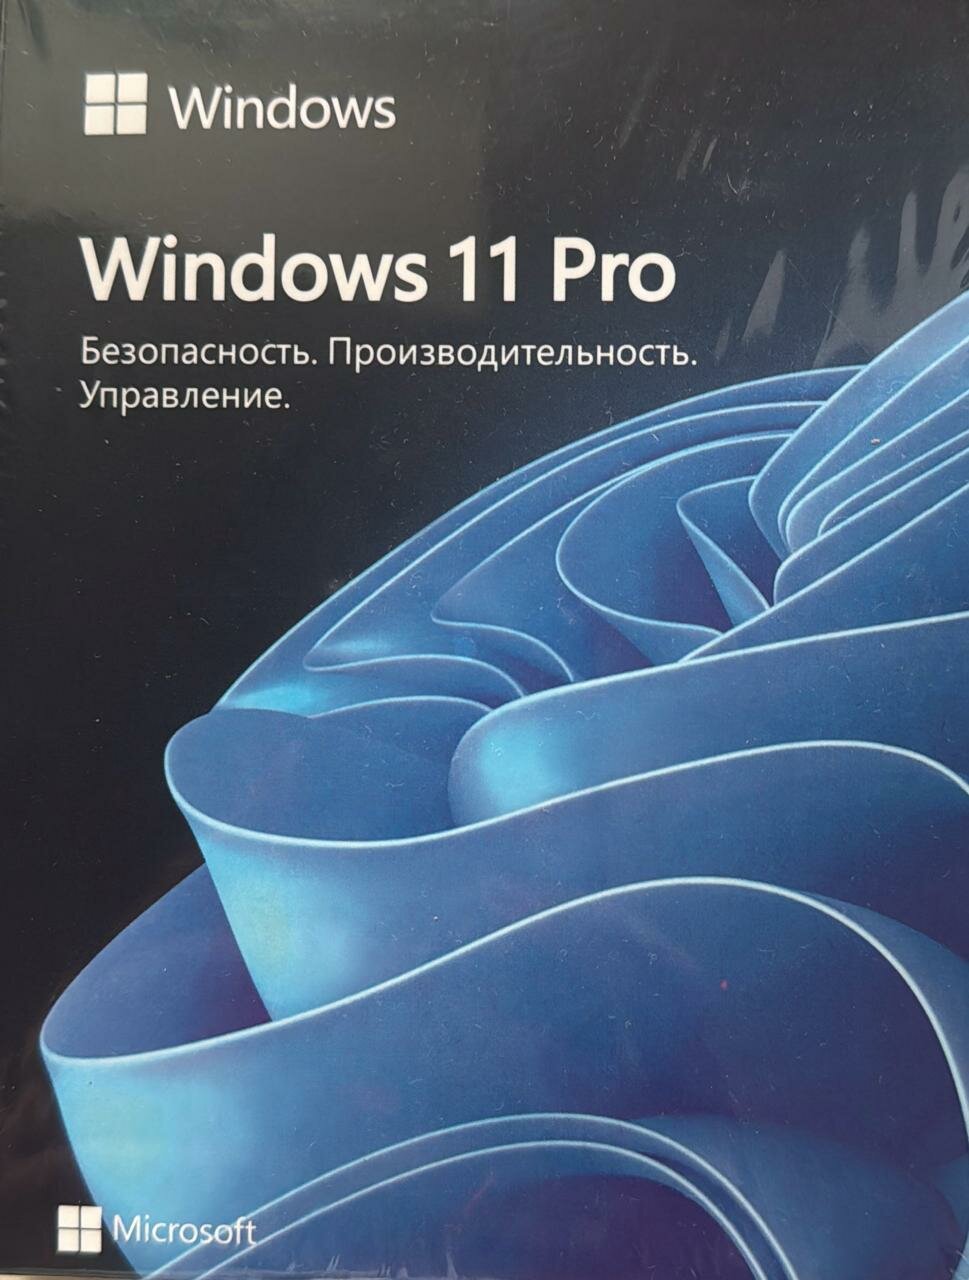 Microsoft Windows 11 Pro BOX, коробочная версия с USB Flash, русский, количество пользователей/устройств: 1 ус, бессрочная